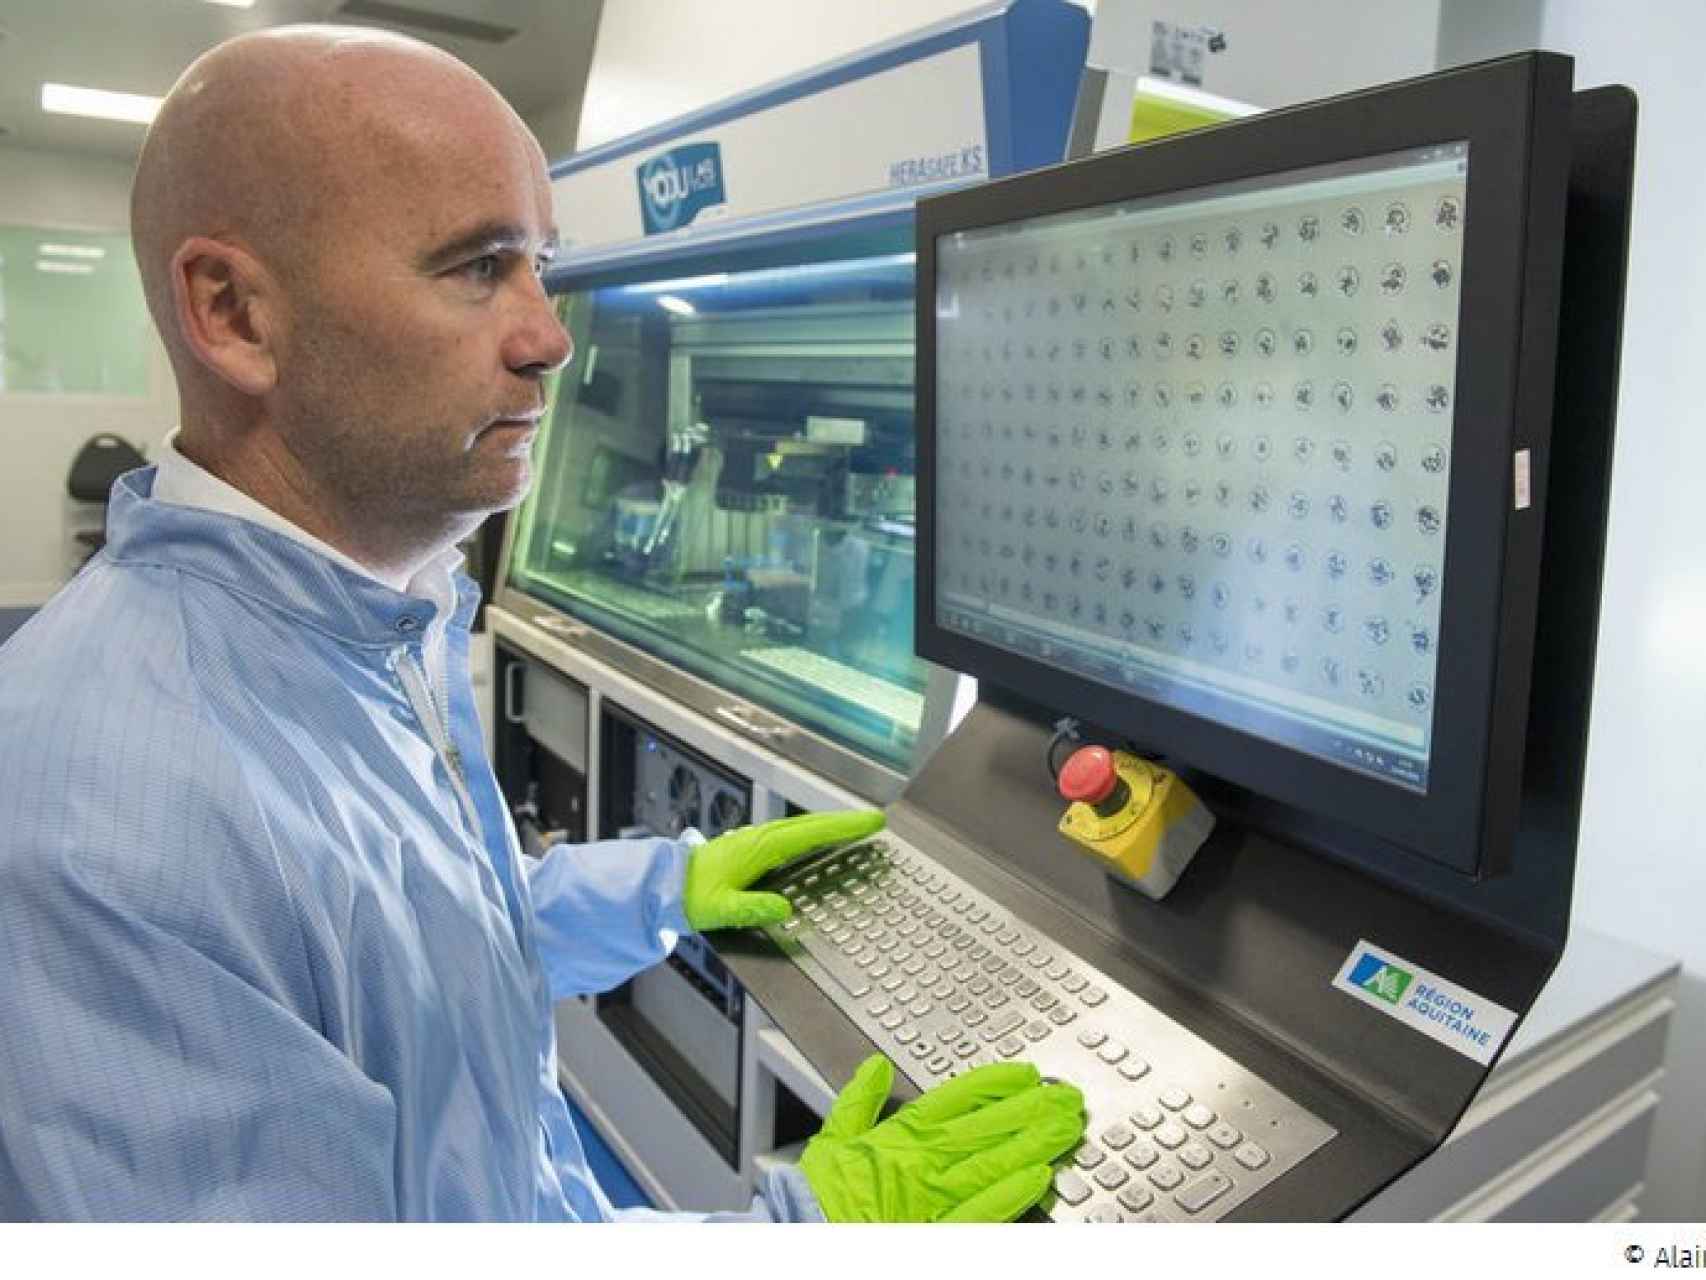 La empresa Poietis se dedica al desarrollo de tejido biológico mediante impresoras 3D.